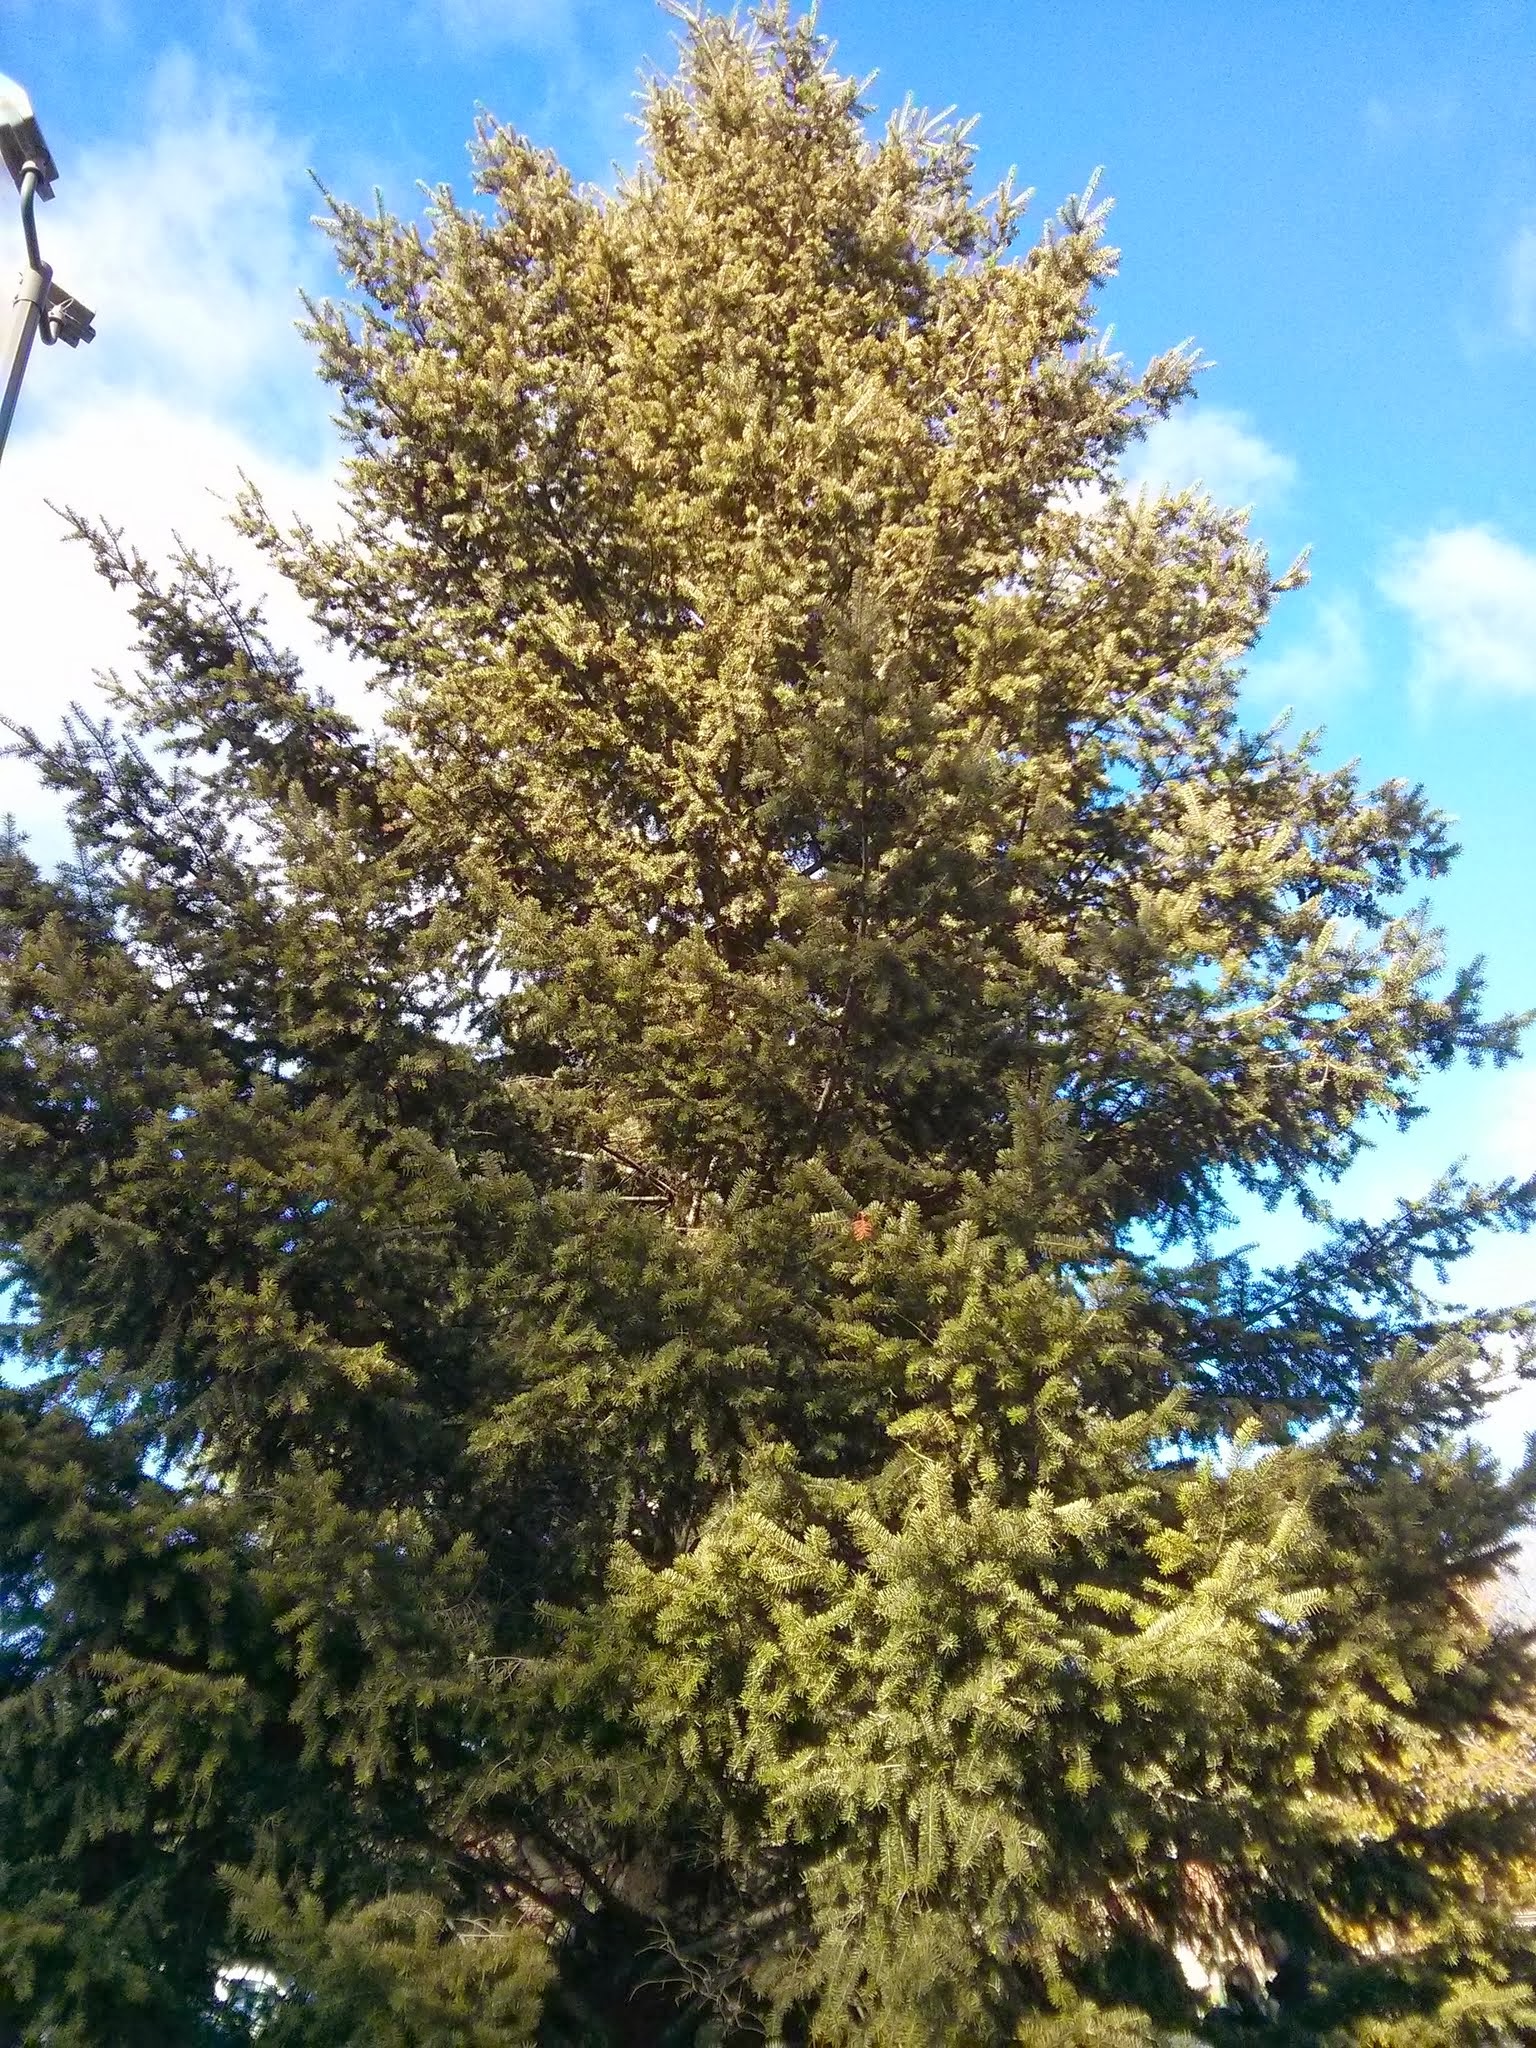 Douglas fir form